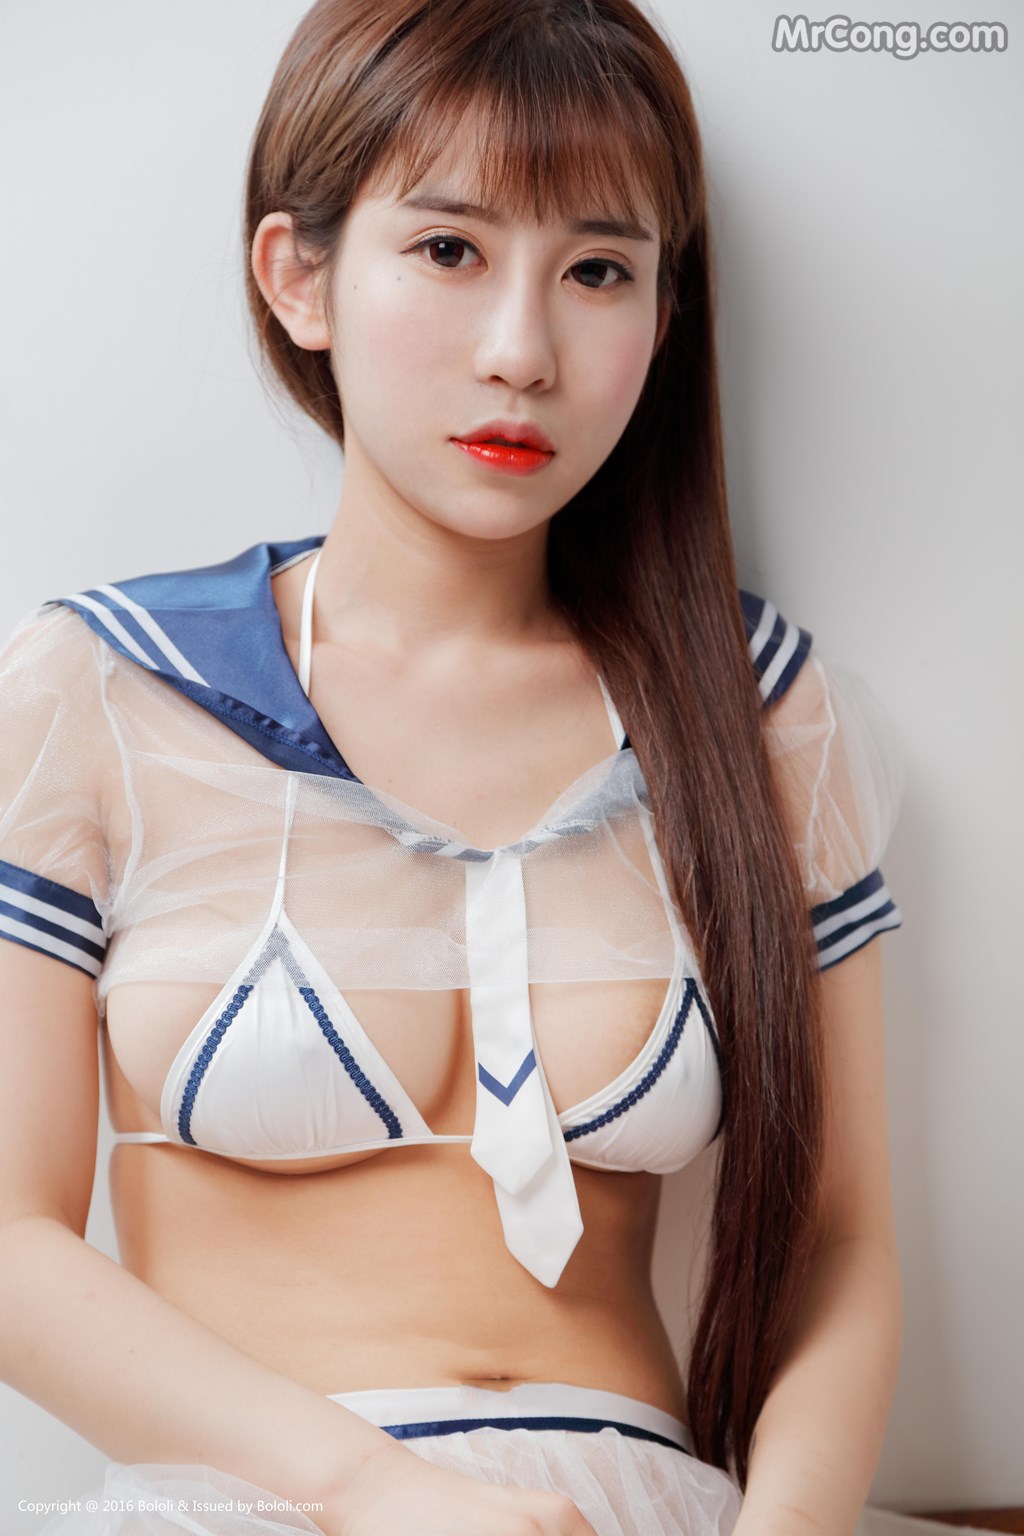 BoLoli 2017-07-16 Vol.084: Model Luo Li You You Jiang (萝莉 悠悠 酱) (40 photos) photo 1-3